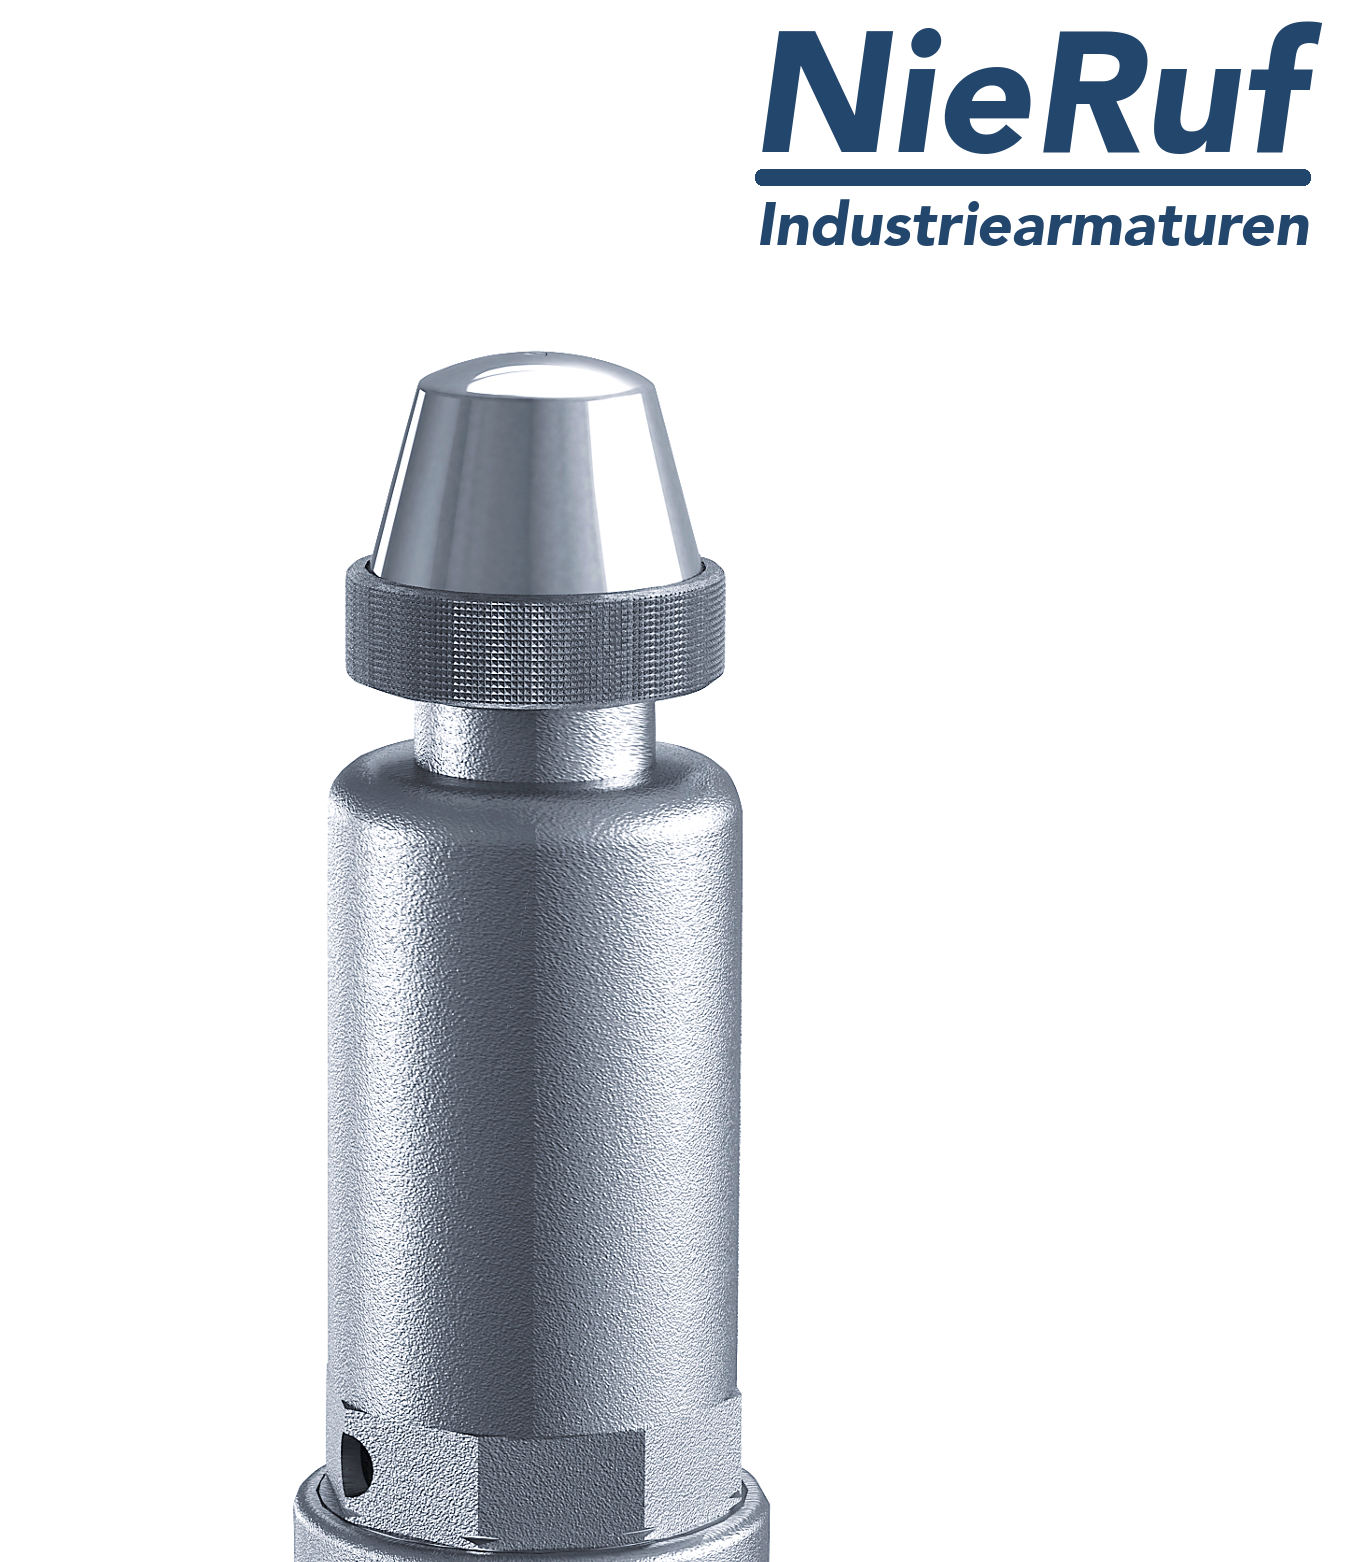 valvola di sicurezza 1 1/2" x 2" F SV05 fluidi liquidi neutri, acciaio inox NBR